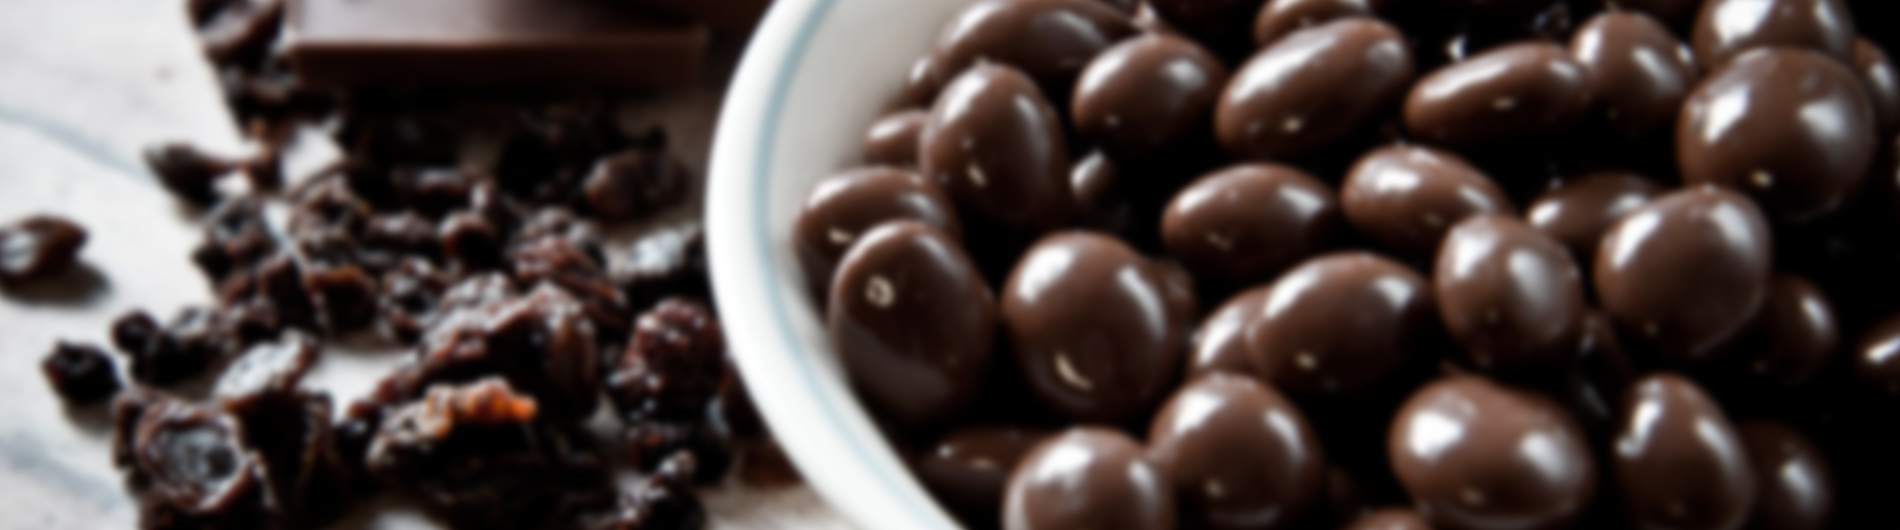 Semillas cubiertas de chocolate | PICSA